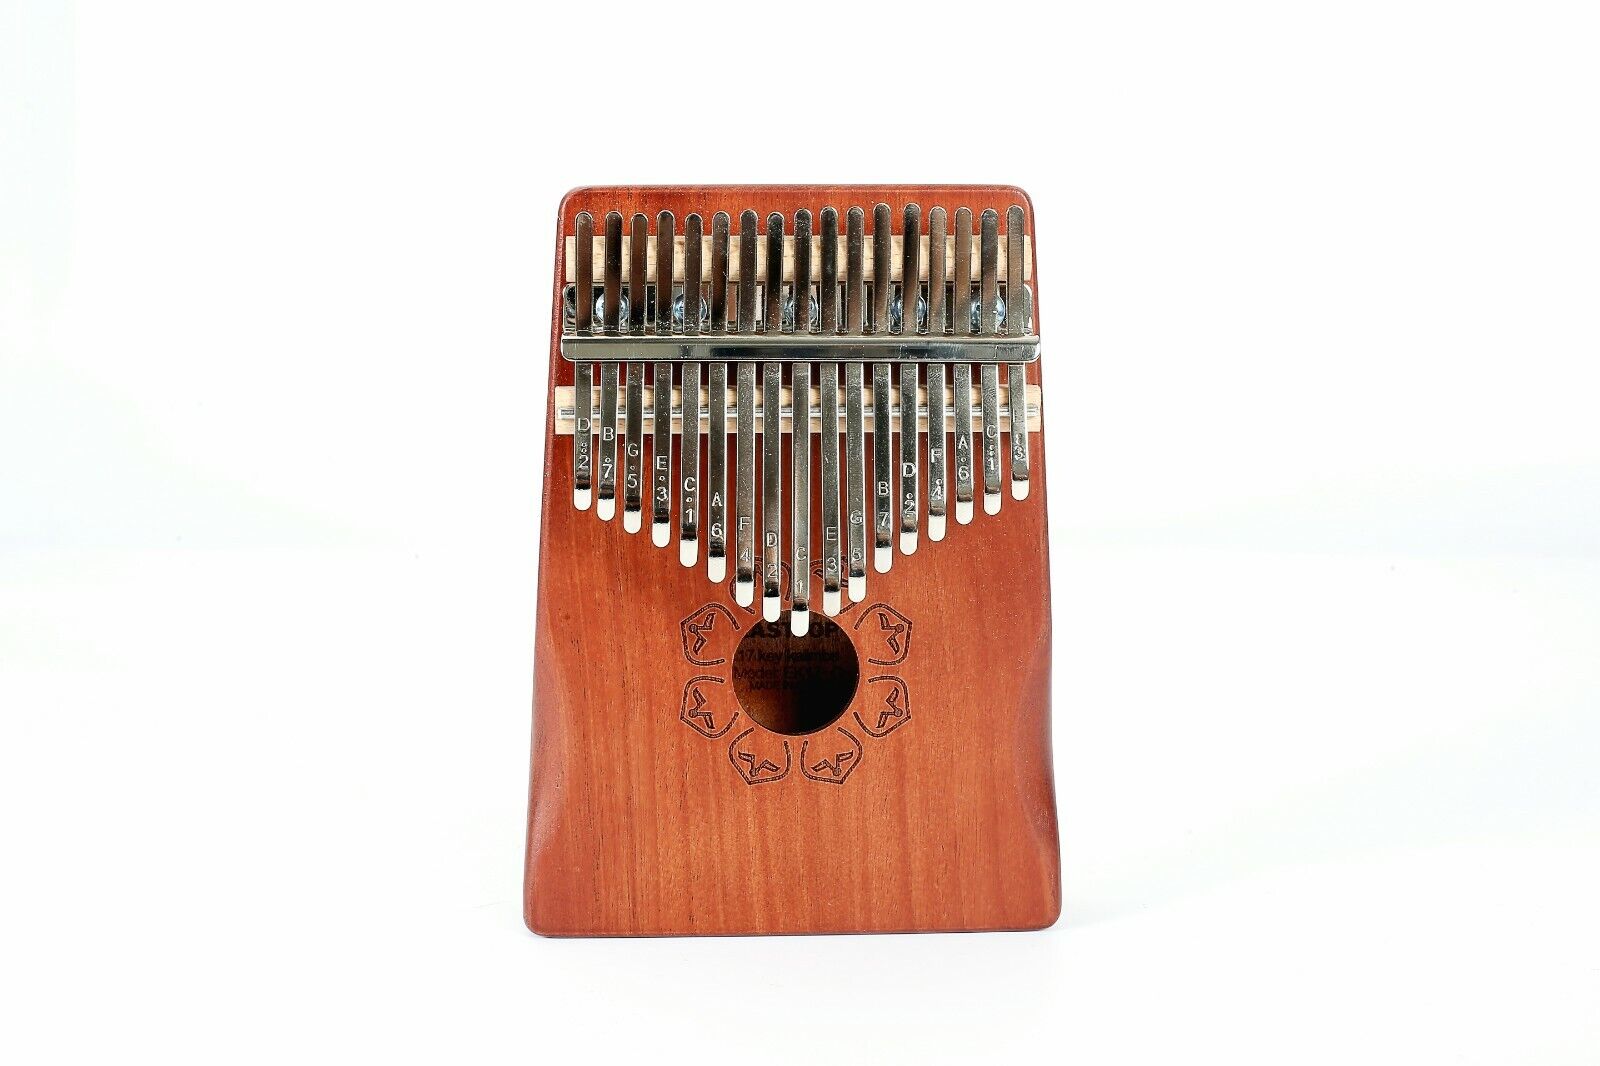 17 Keys Kalimba Thumb Piano Portable Mahogany Finger Piano Mini Mbira Keyboard